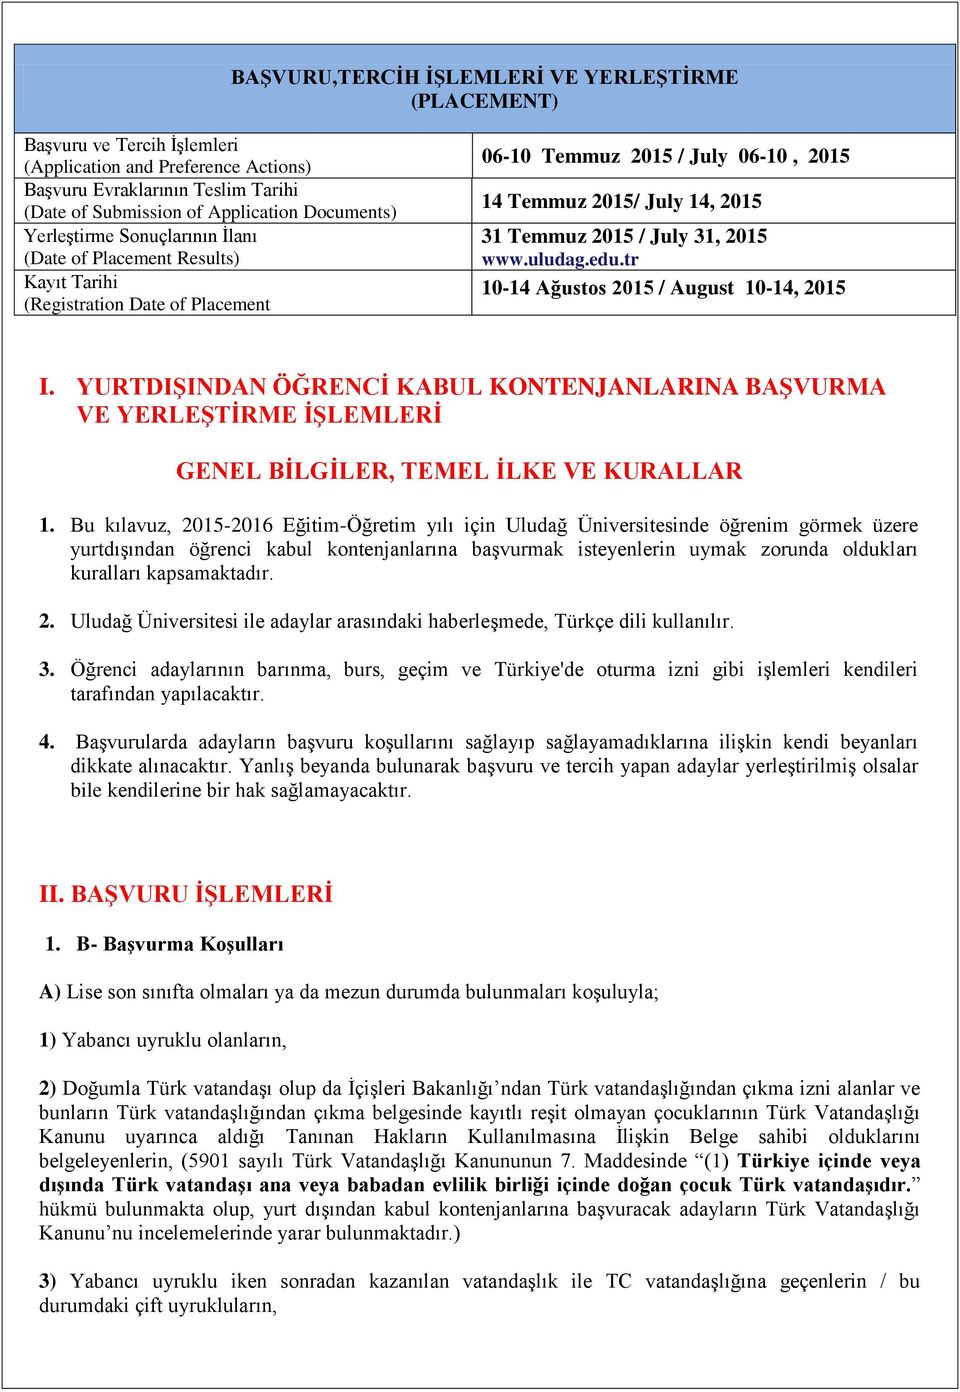 2015 www.uludag.edu.tr 10-14 Ağustos 2015 / August 10-14, 2015 I. YURTDIġINDAN ÖĞRENCĠ KABUL KONTENJANLARINA BAġVURMA VE YERLEġTĠRME ĠġLEMLERĠ GENEL BĠLGĠLER, TEMEL ĠLKE VE KURALLAR 1.